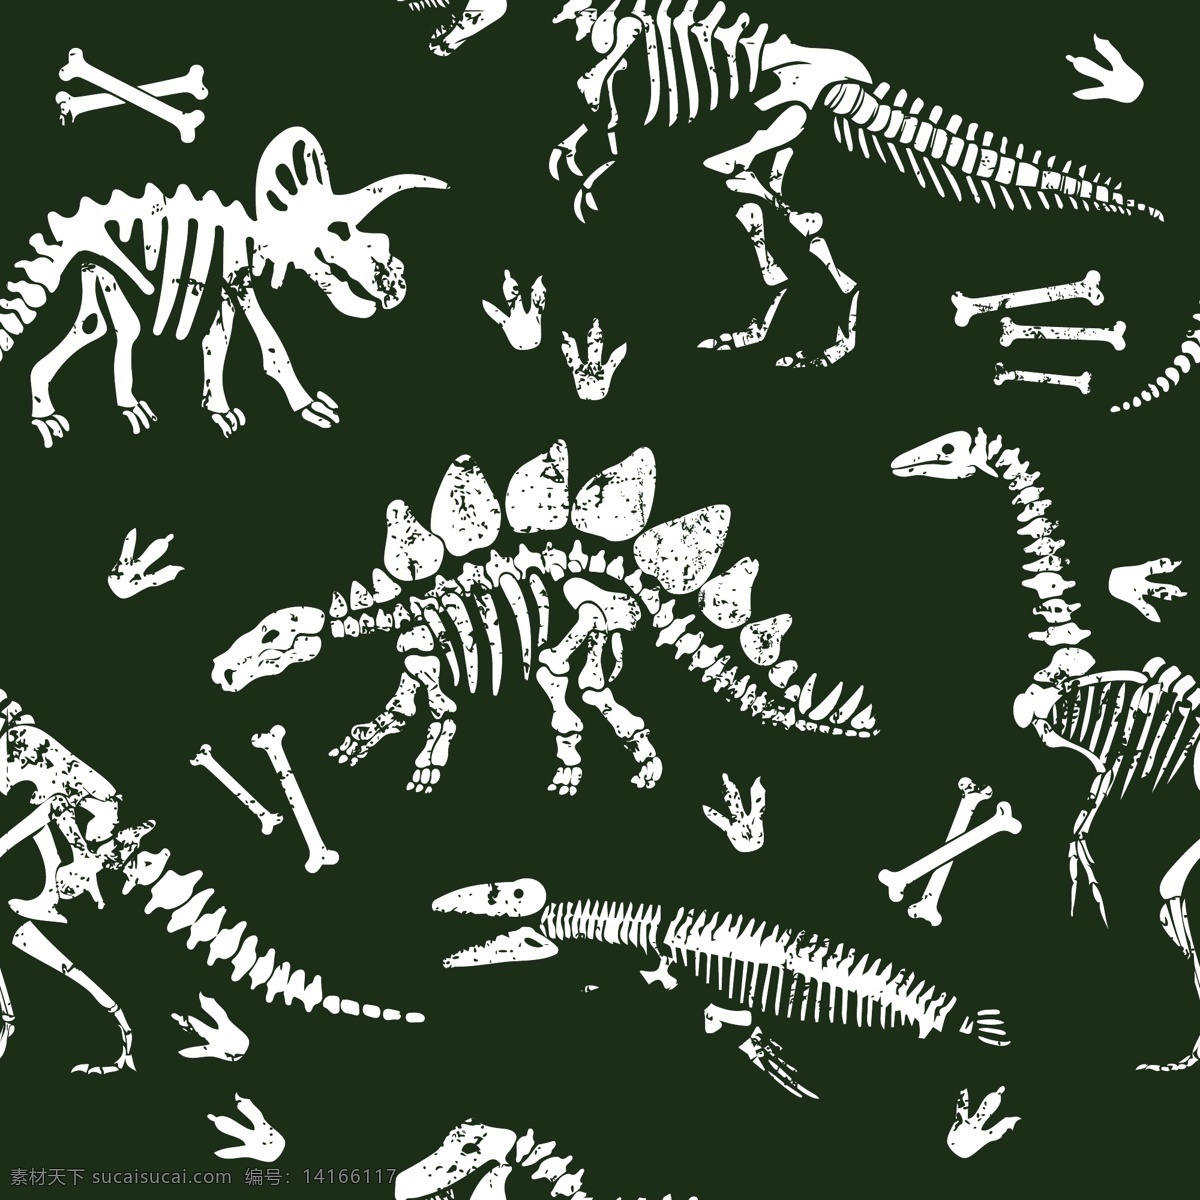 恐龙化石 矢量图 大牌图案 抽象图案 动物 精美 面料 图案 花型 底纹边框 背景底纹